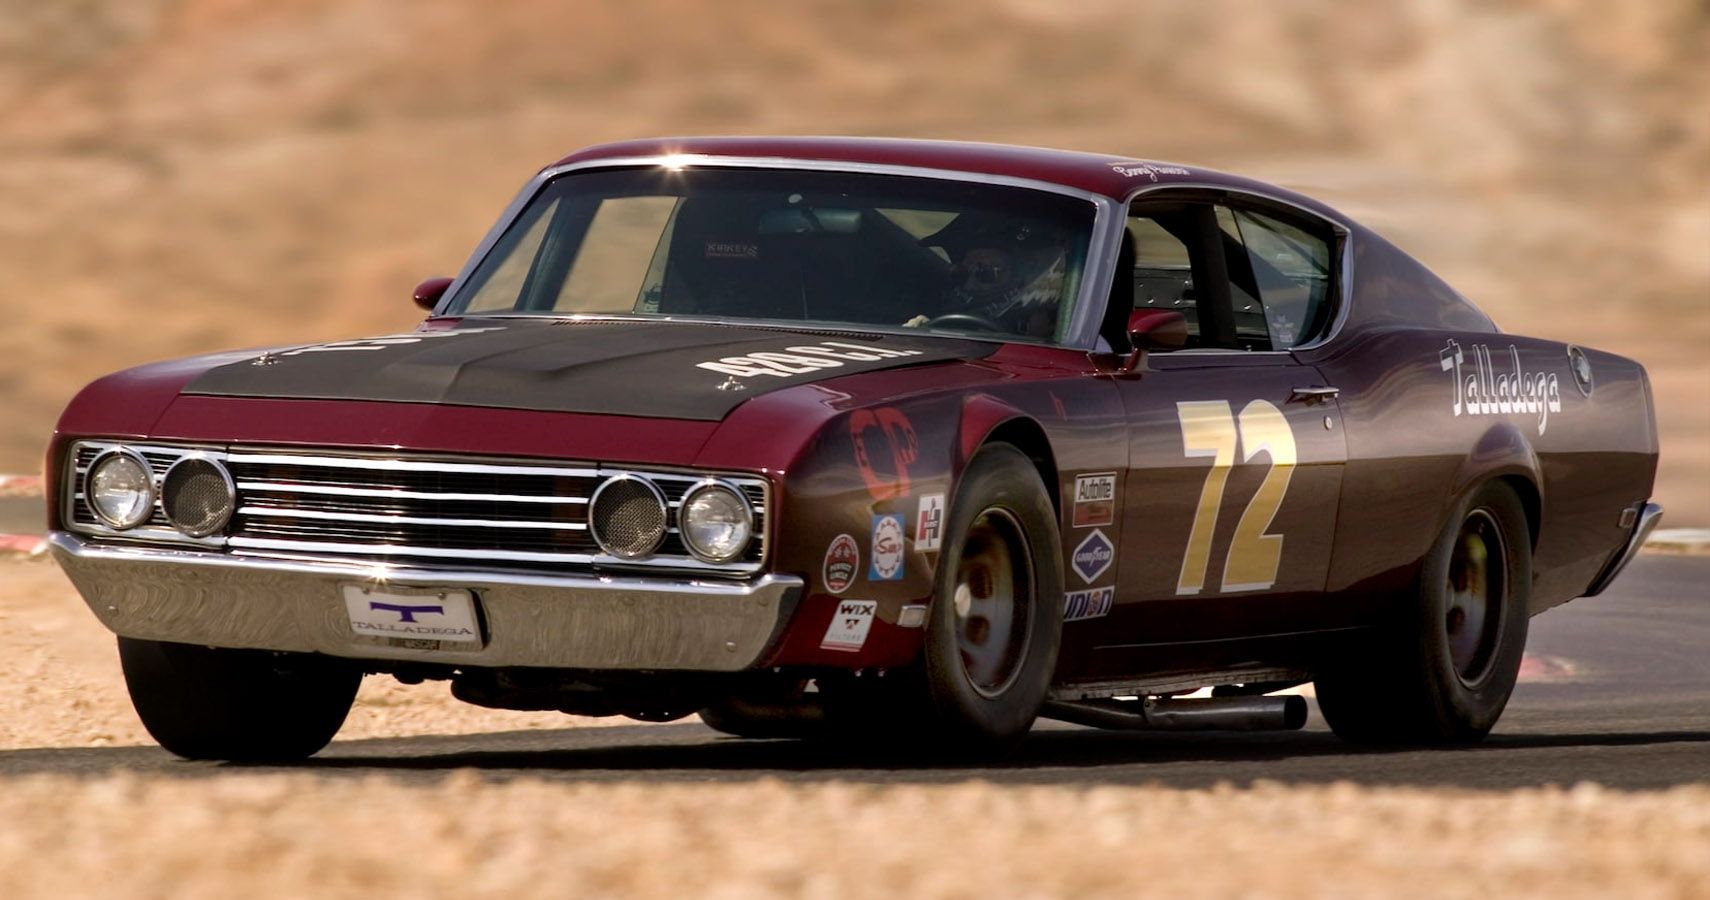 Maroon 1969 Ford Torino Talladega seen racing on track